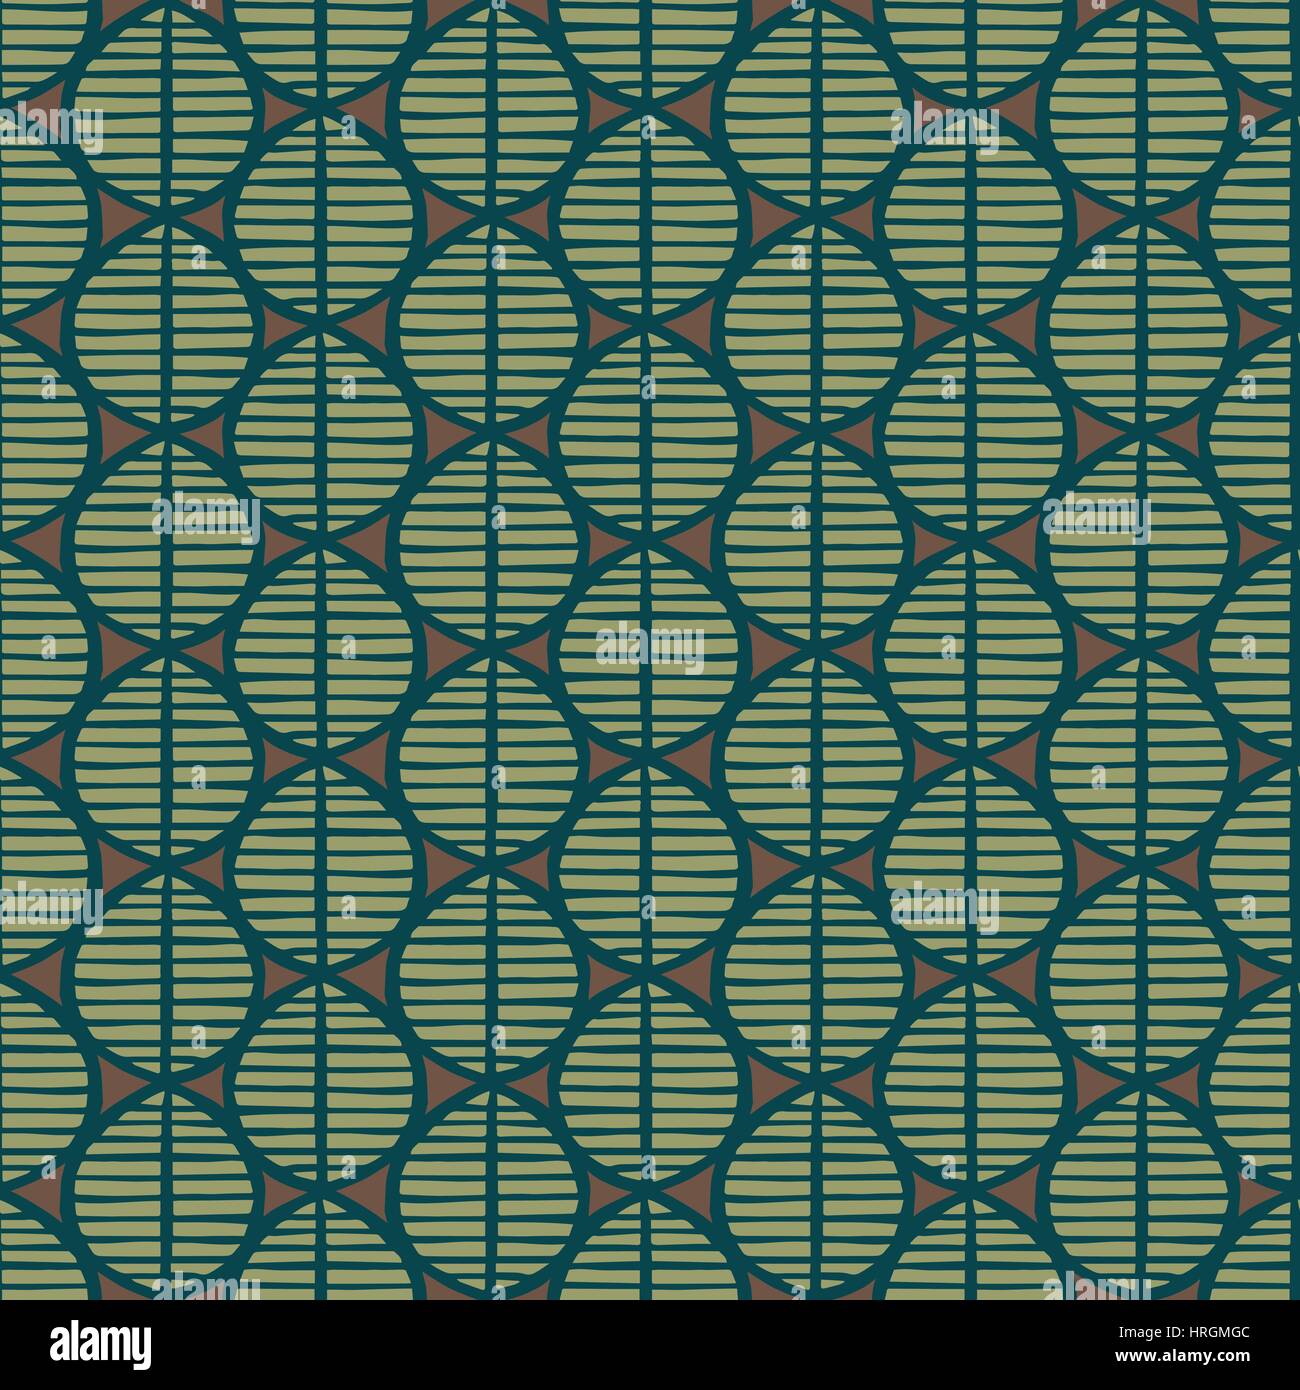 Primitive nahtlose Blumenmuster mit Blättern. Stammes-ethnischen Hintergrund, einfache Geometrie, Smaragd und braun. Textil-Design. Stock Vektor